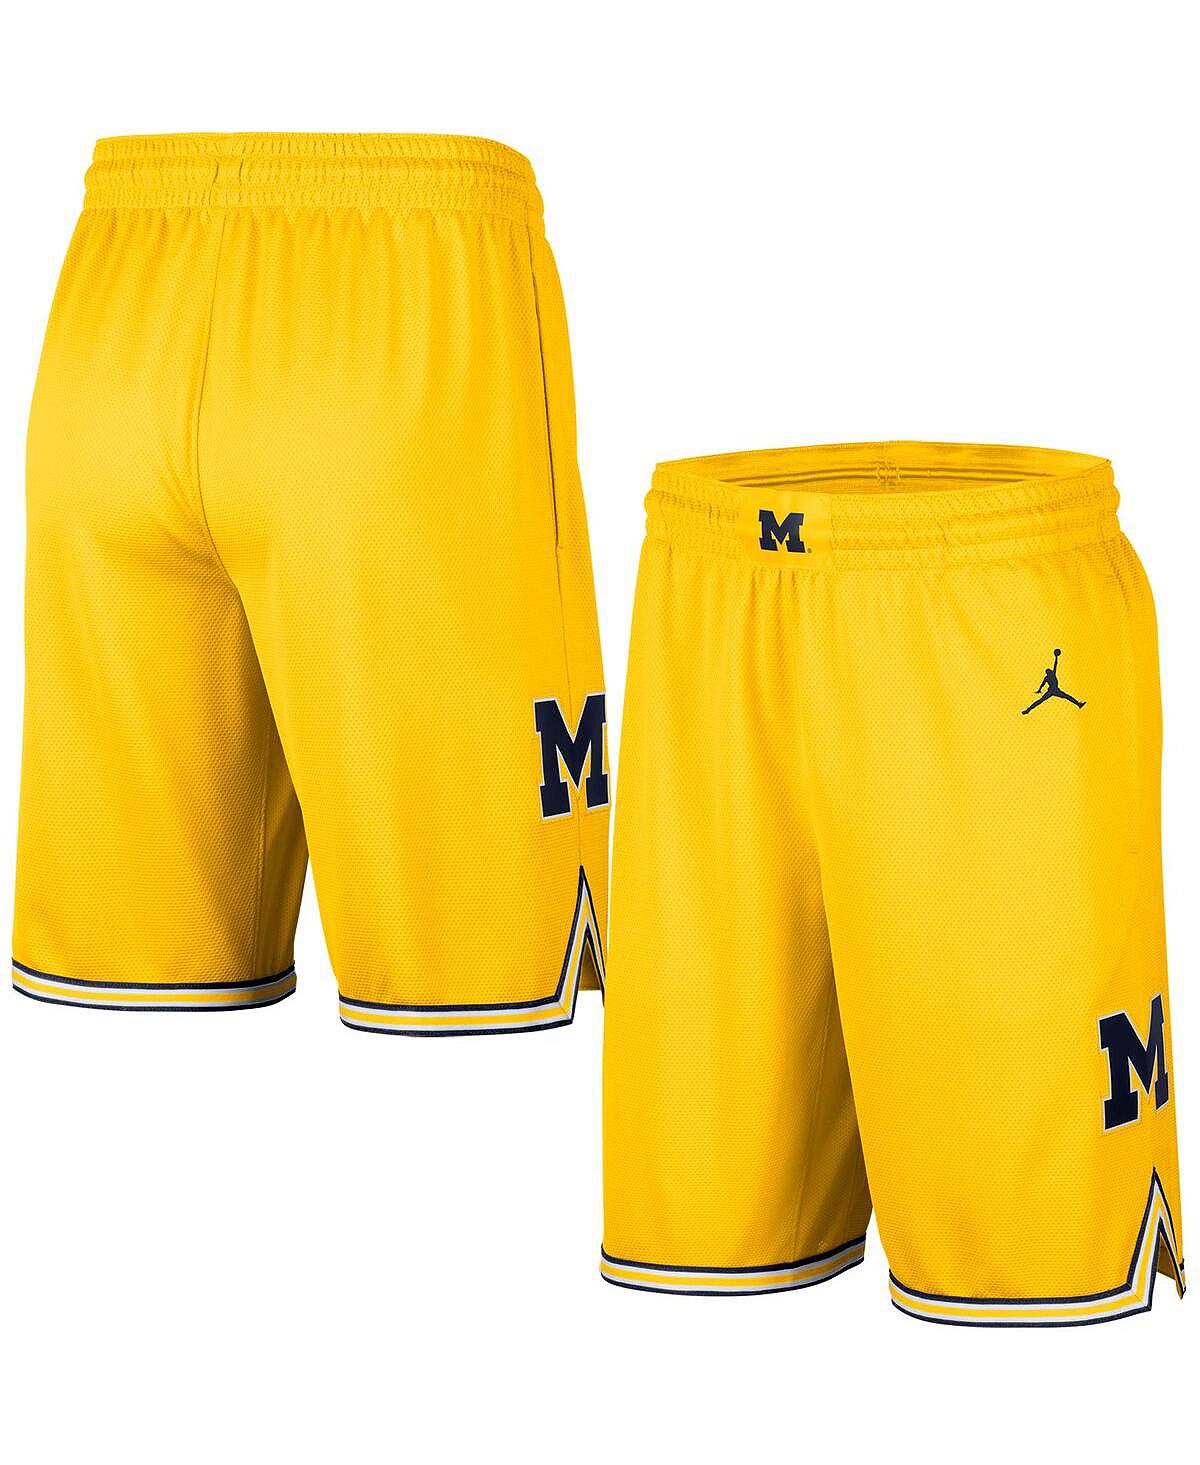 Мужские брендовые баскетбольные шорты Maize Michigan Wolverines Replica Team Jordan